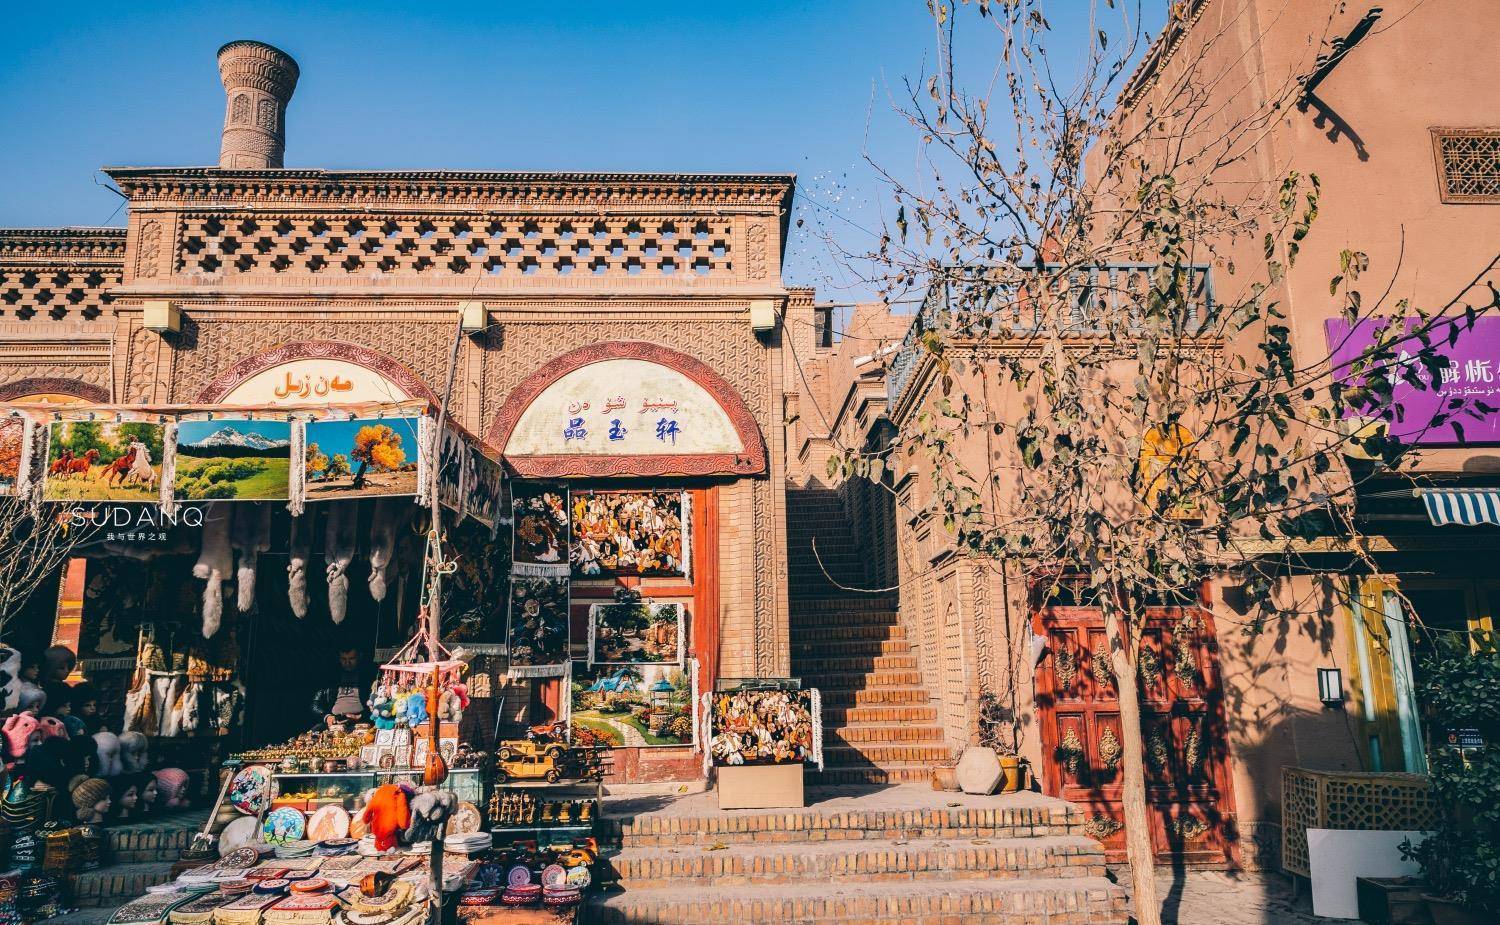 去新疆一定别错过喀什:千年老城恍如历史穿越,西域如此风情